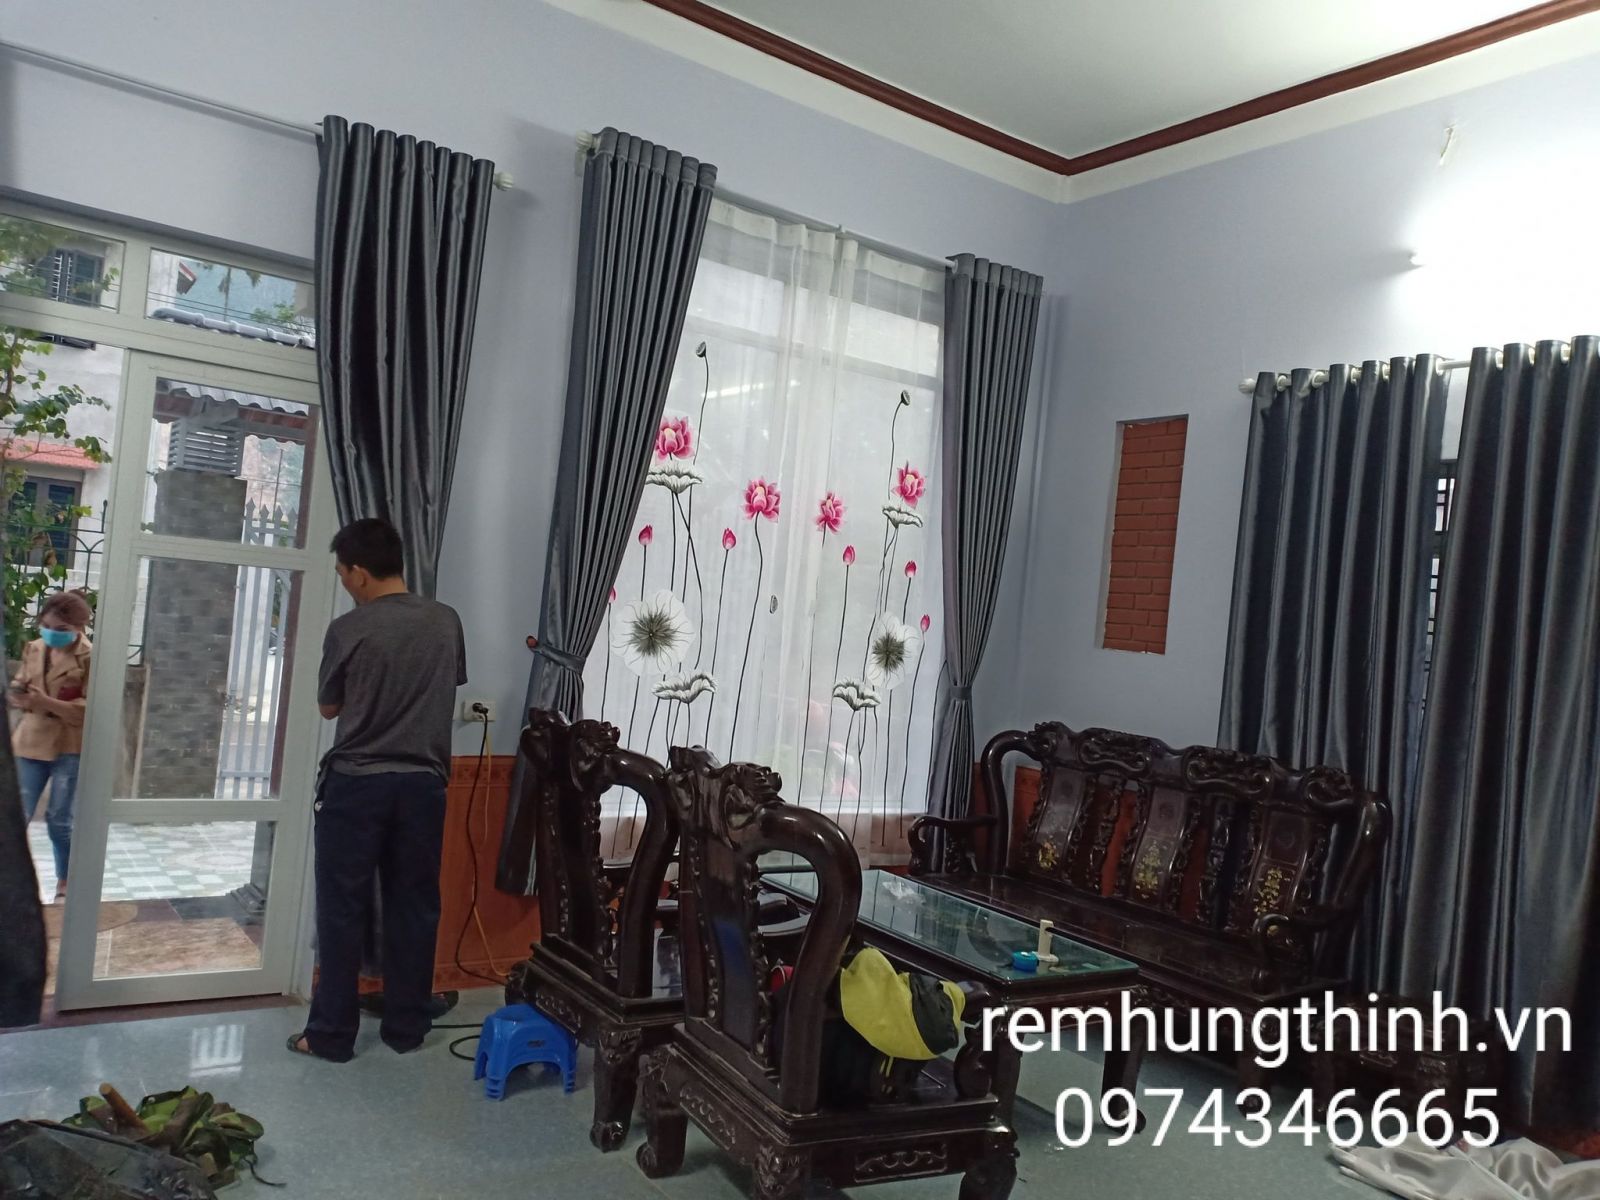 Rèm vải 2 lớp thêu tay hoạ tiết tại phường Dịch Vong quận Cầu Giấy